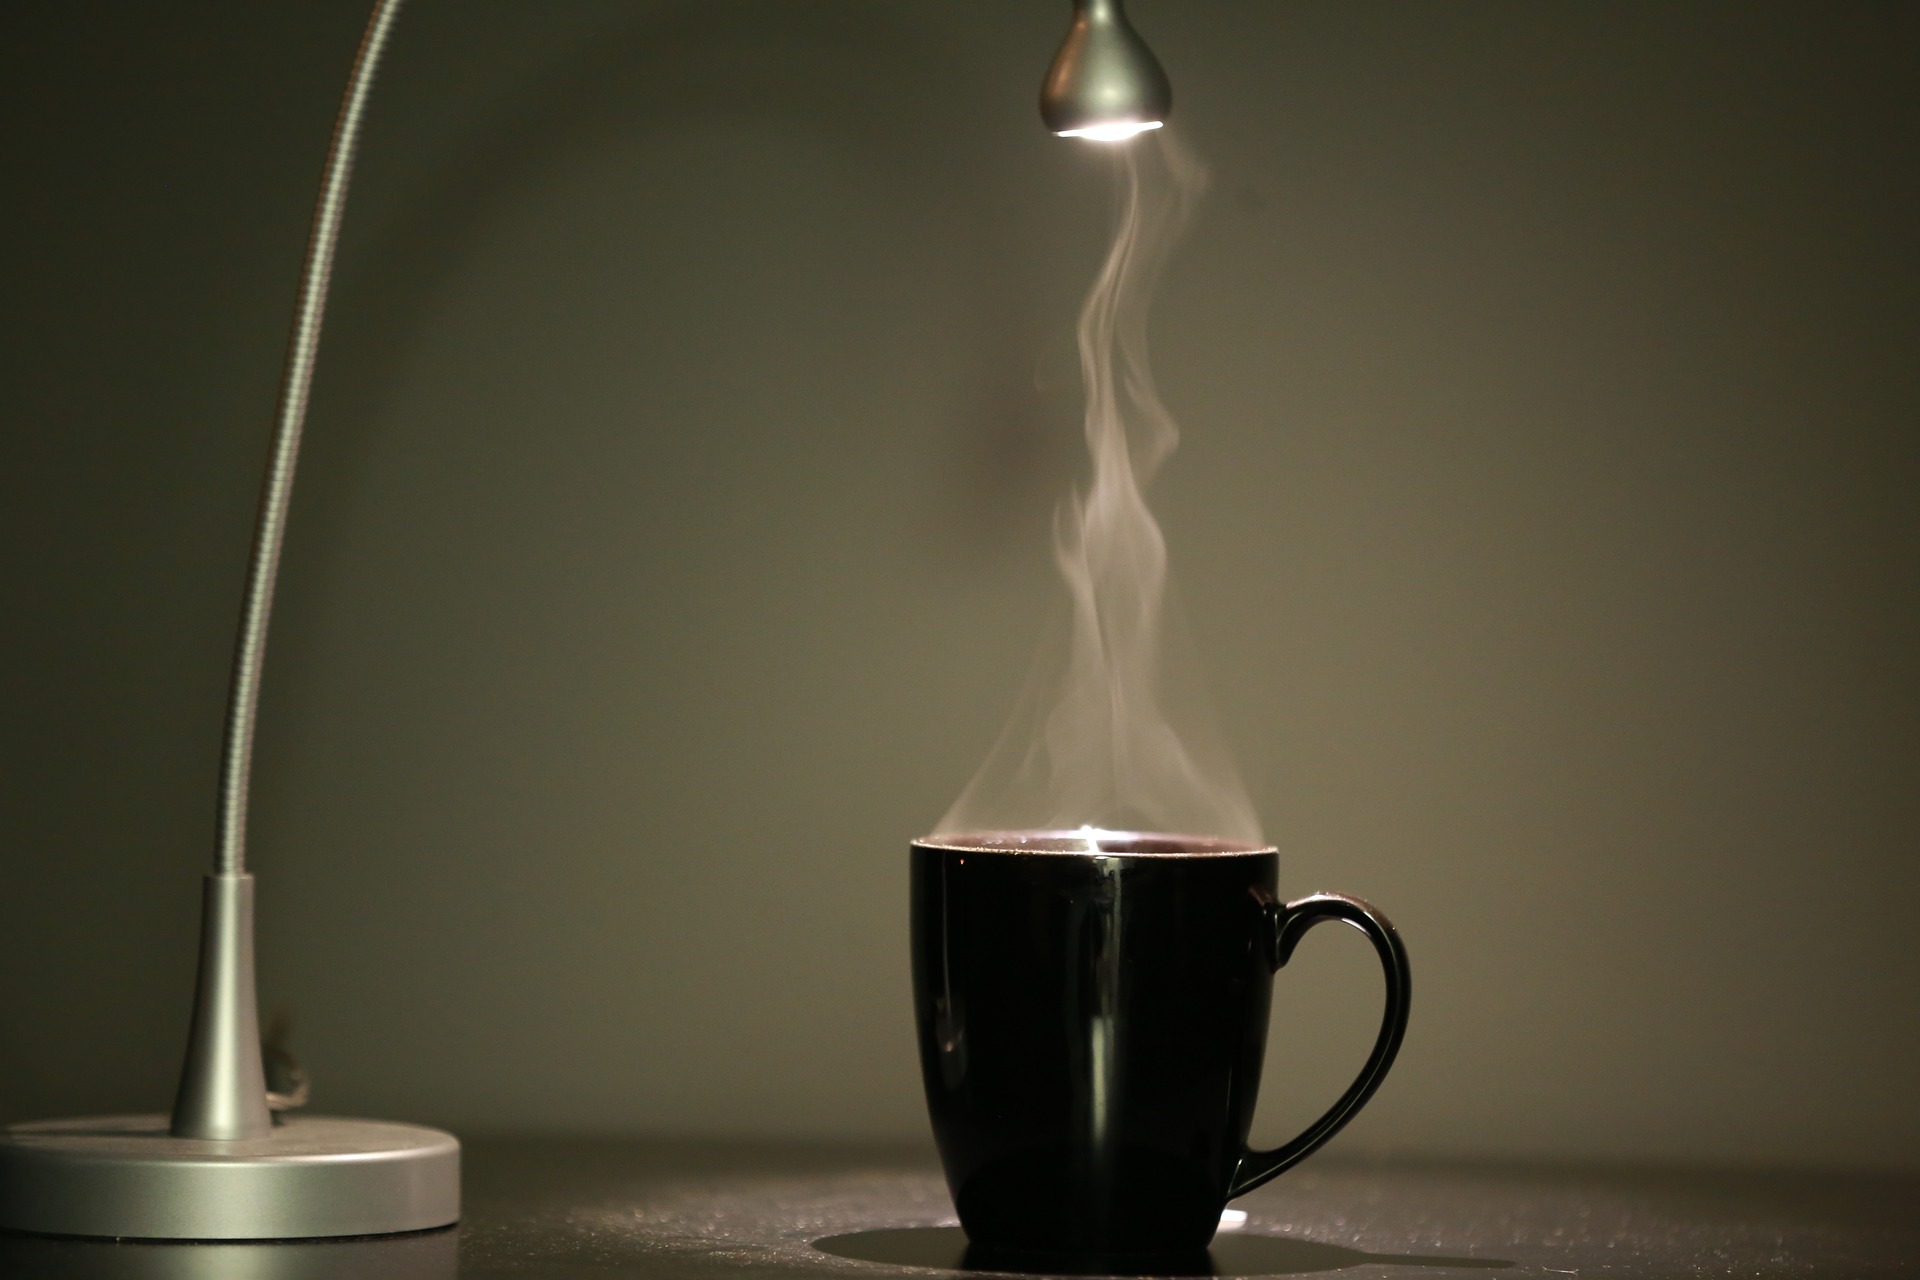 kafa i čaj